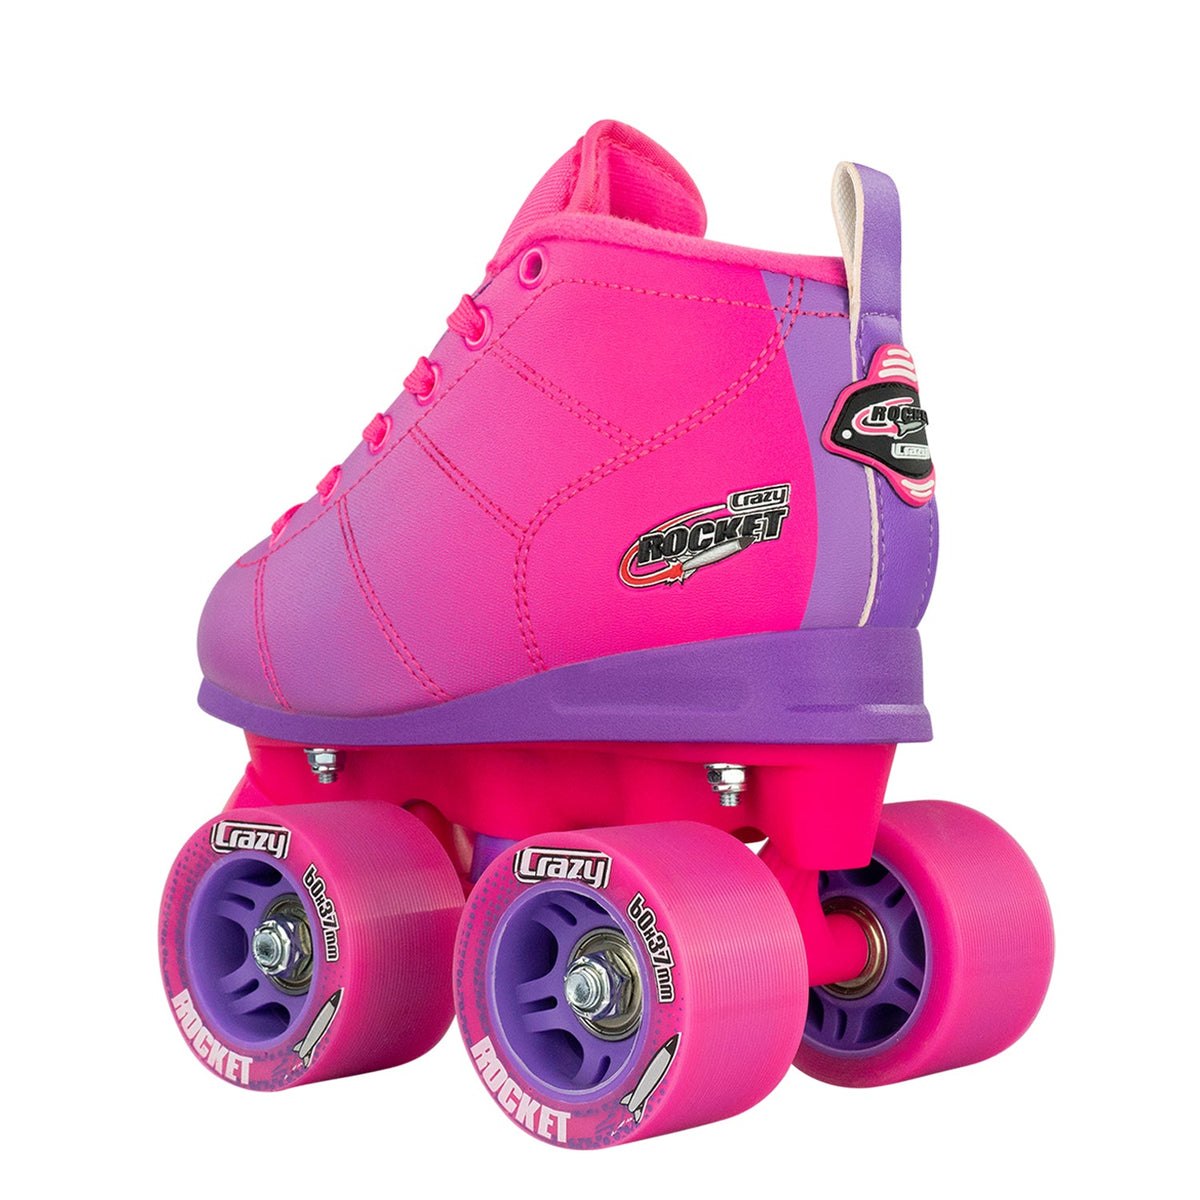 Rocket Roller Skates for Girls and Kids by Crazy SkatesPink/Purple 